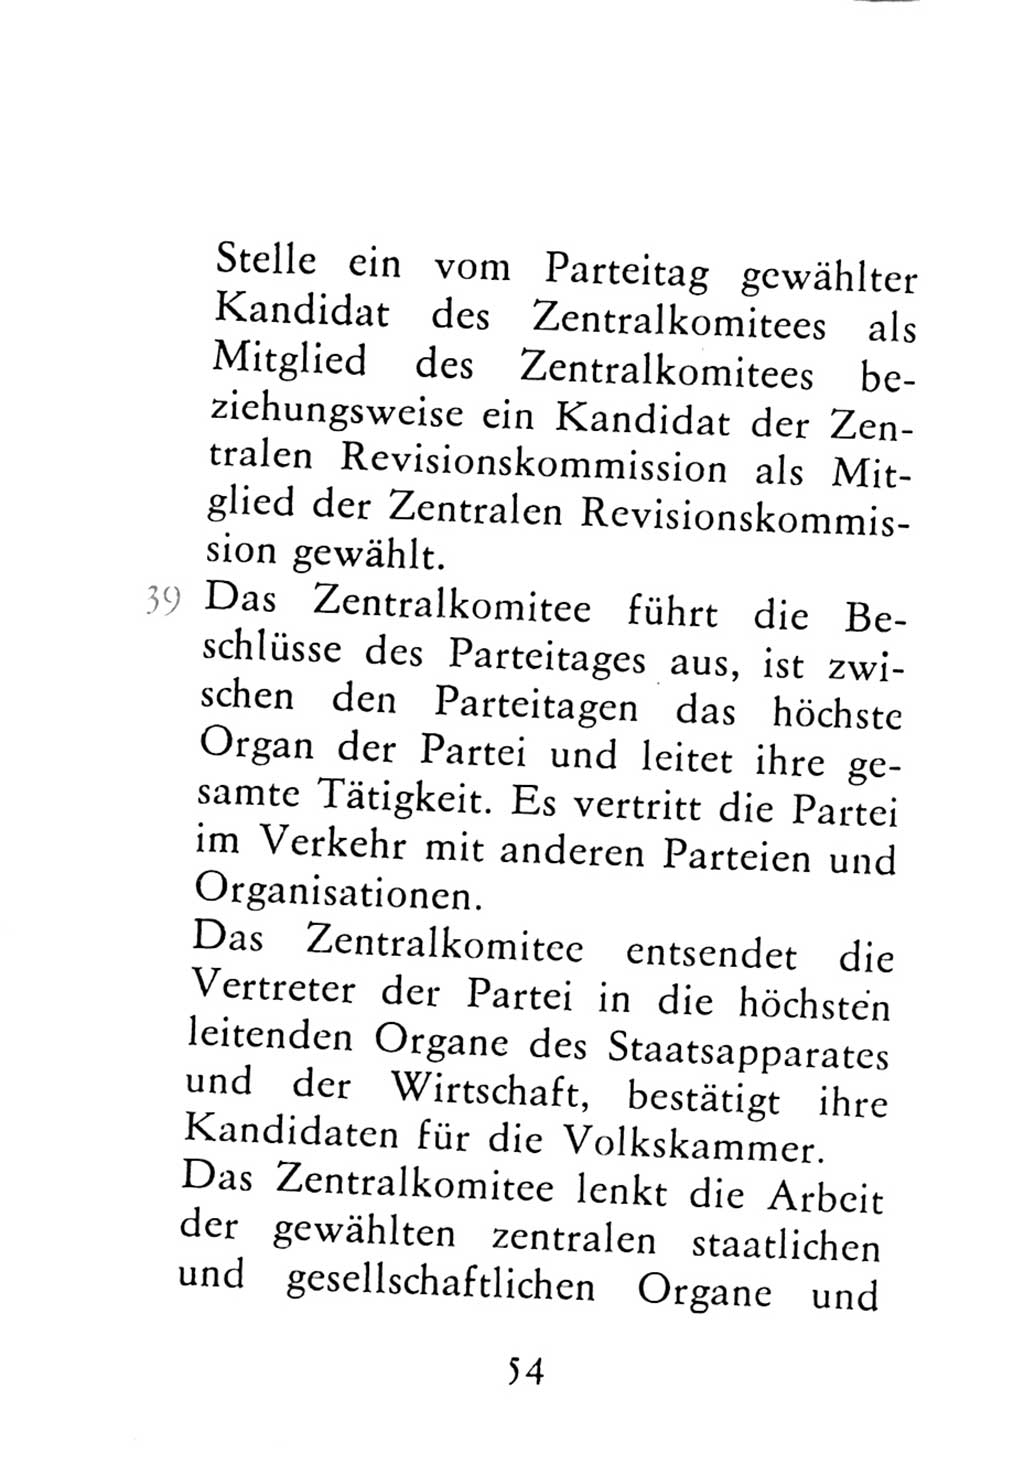 Statut der Sozialistischen Einheitspartei Deutschlands (SED) 1976, Seite 54 (St. SED DDR 1976, S. 54)